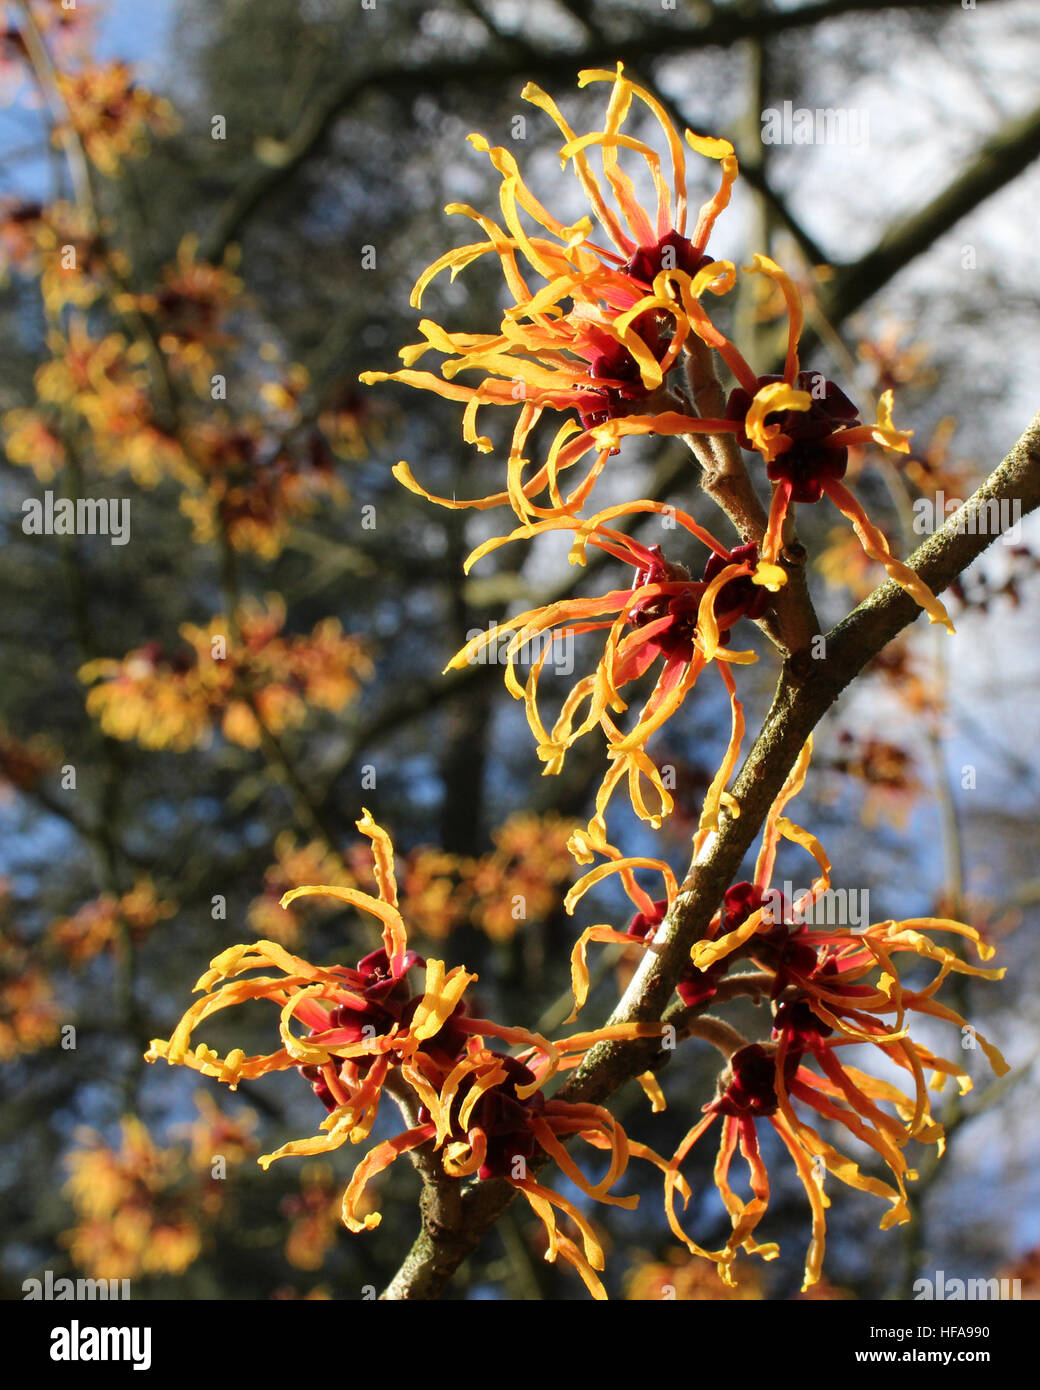 Les fleurs ensoleillées de cunninghamia lanceolata aussi connu que le chinois l'Hamamélis, un arbuste à fleurs originaire d'hiver en Chine. Banque D'Images